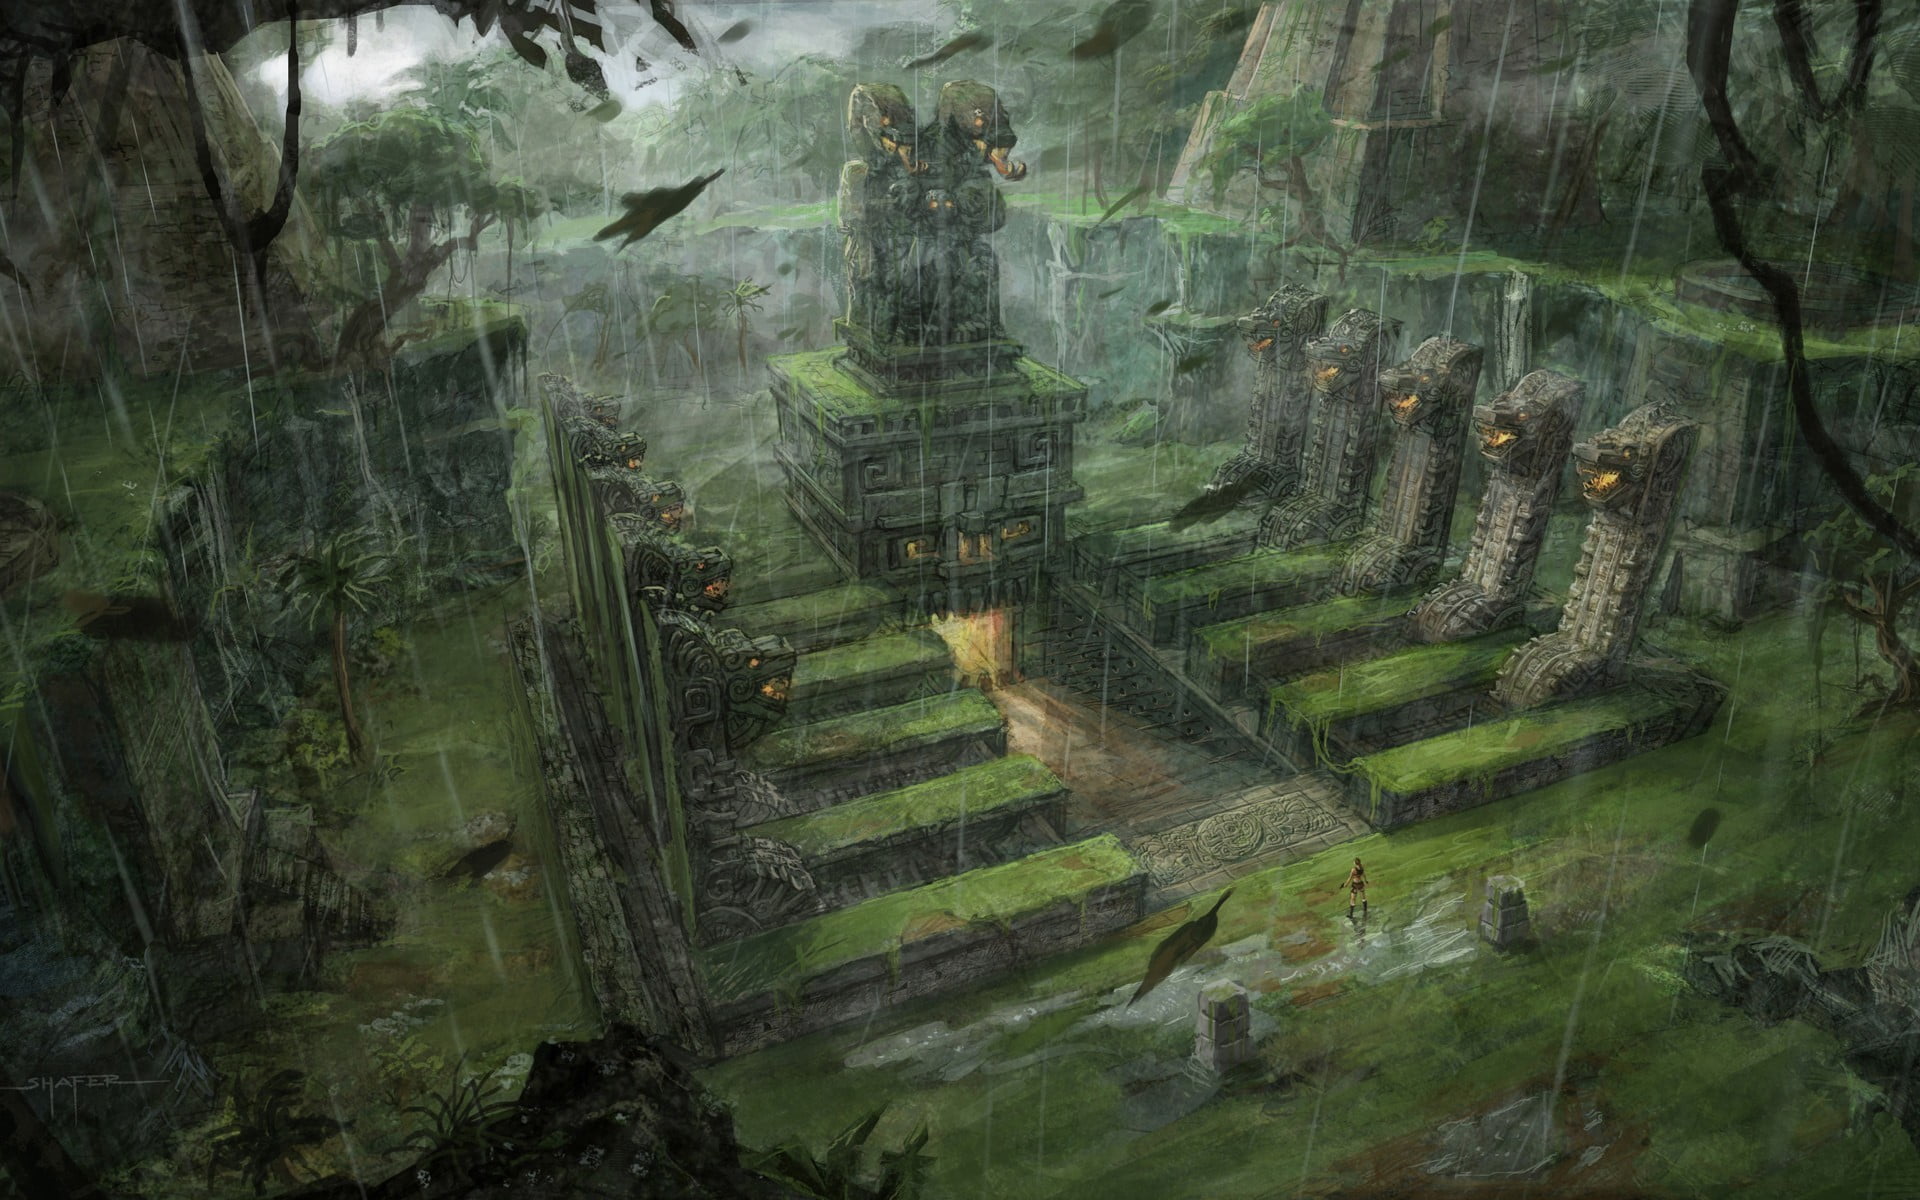 fantasy-art-lara-croft-tomb-raider-video-games-wallpaper.jpg